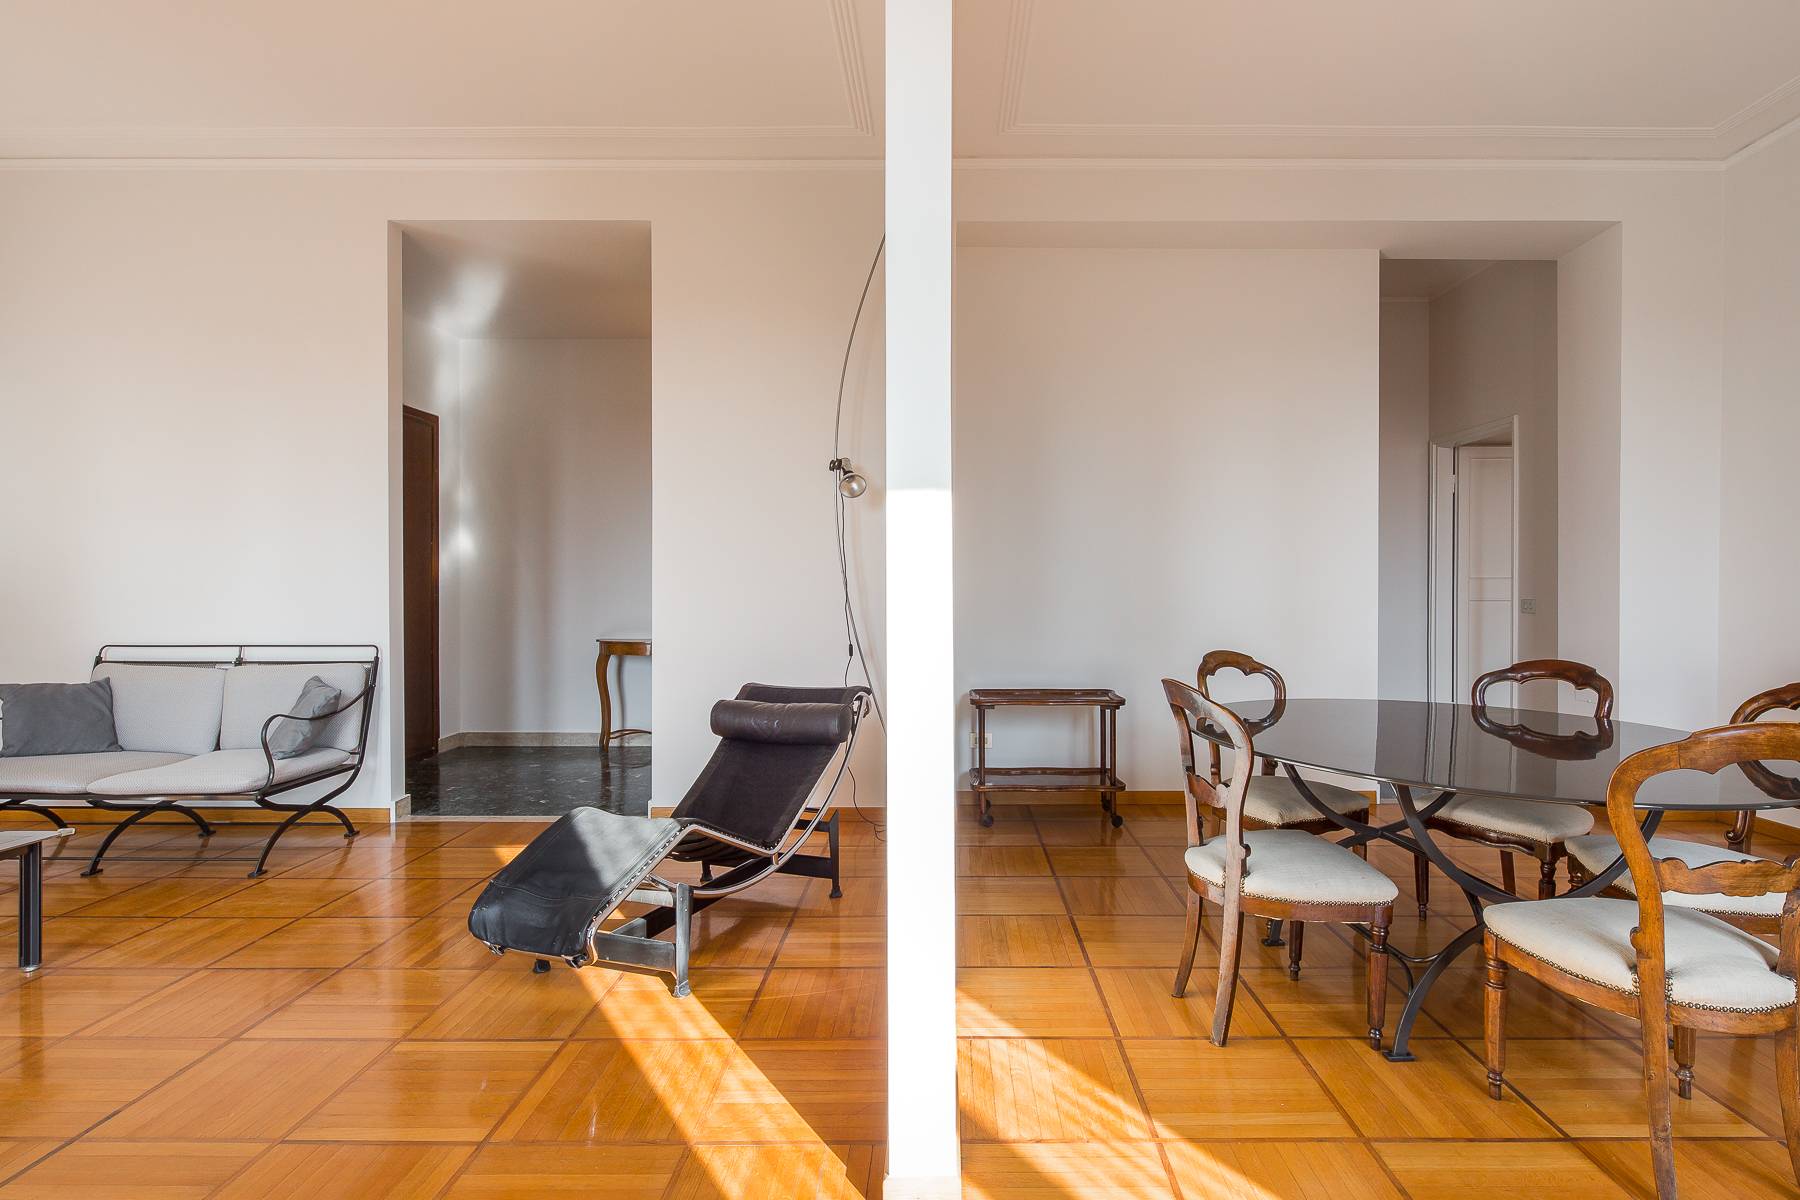 Appartamento in Affitto a Milano: 3 locali, 140 mq - Foto 7